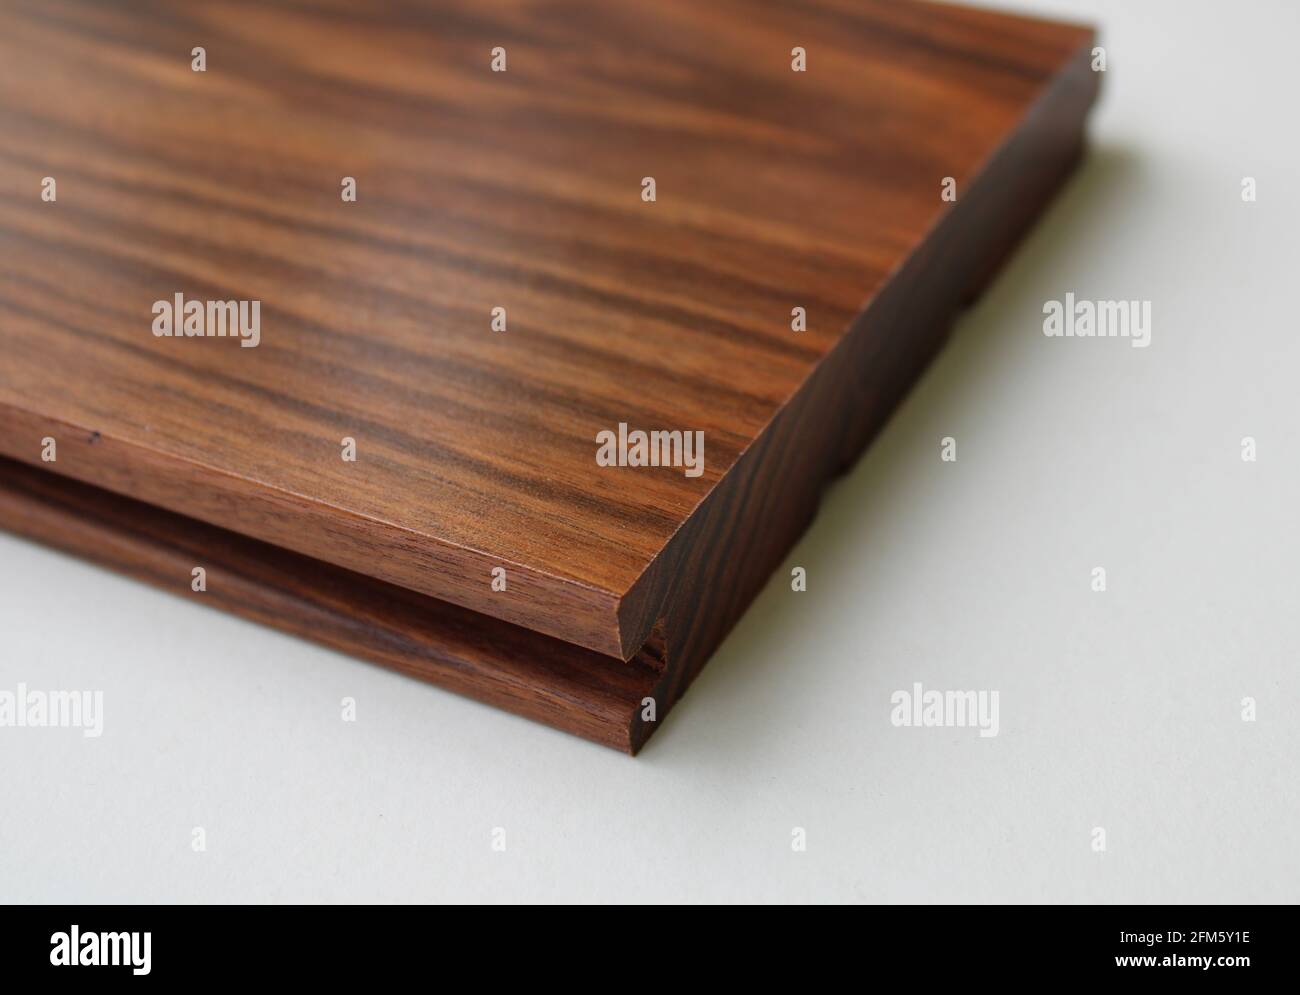 A Curupay Hardwood Floor Board Stock Photo